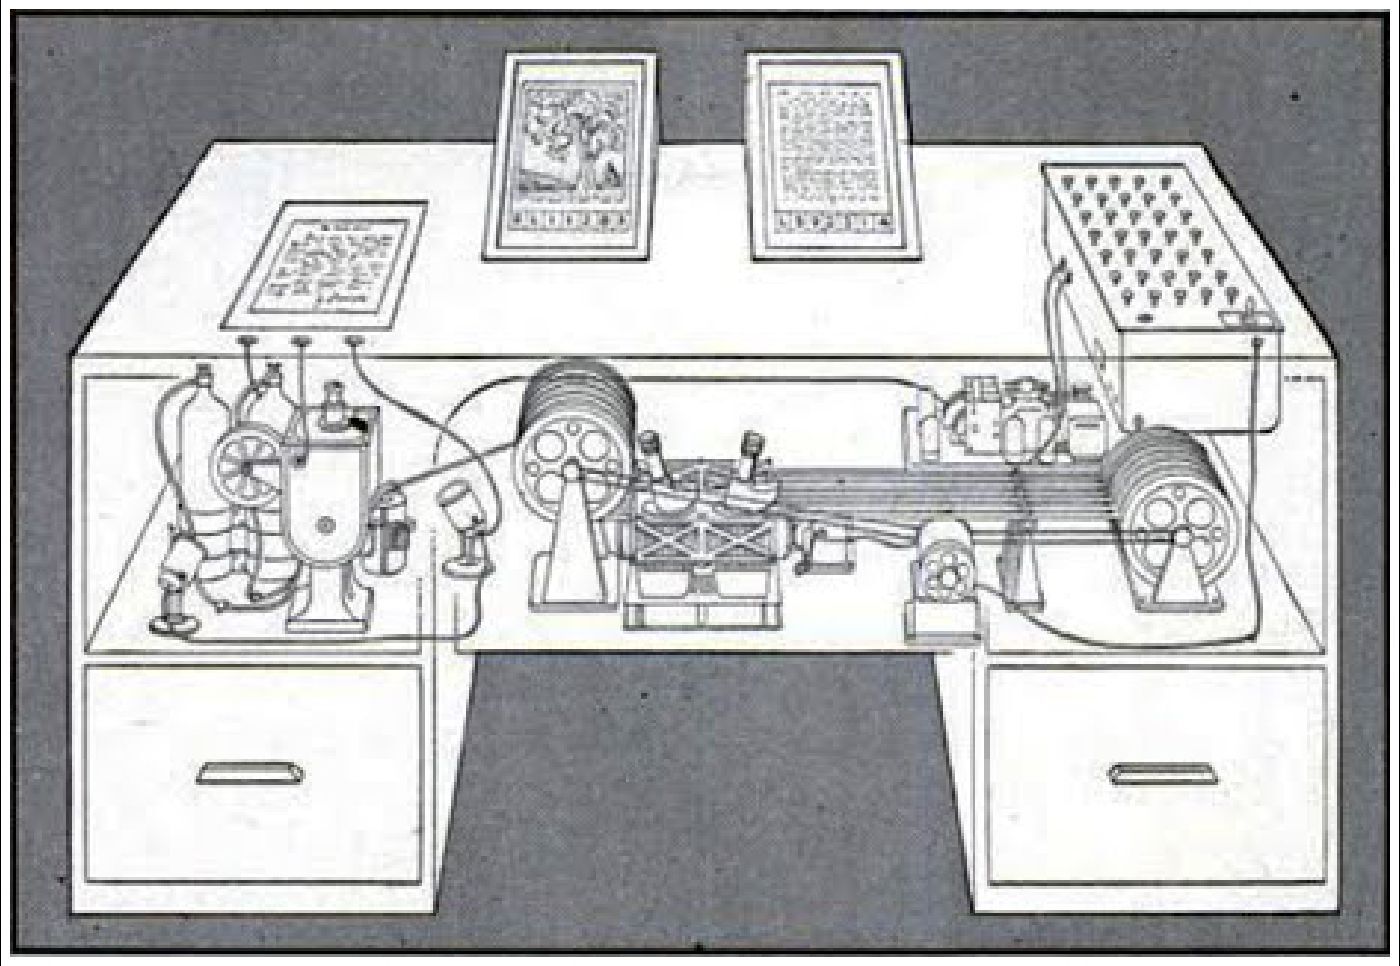 Conceptual sketch of a possible memex design